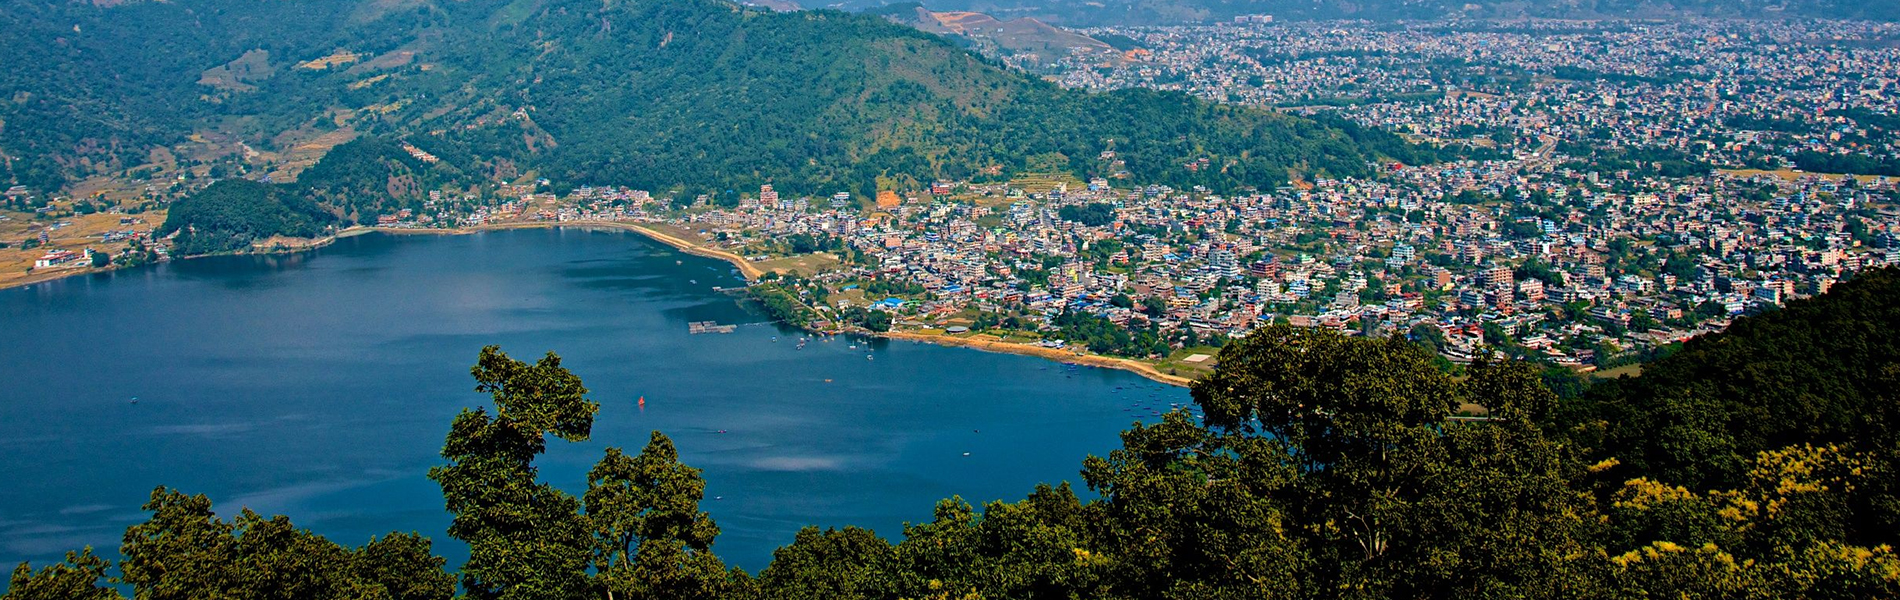 places to visit around nepal